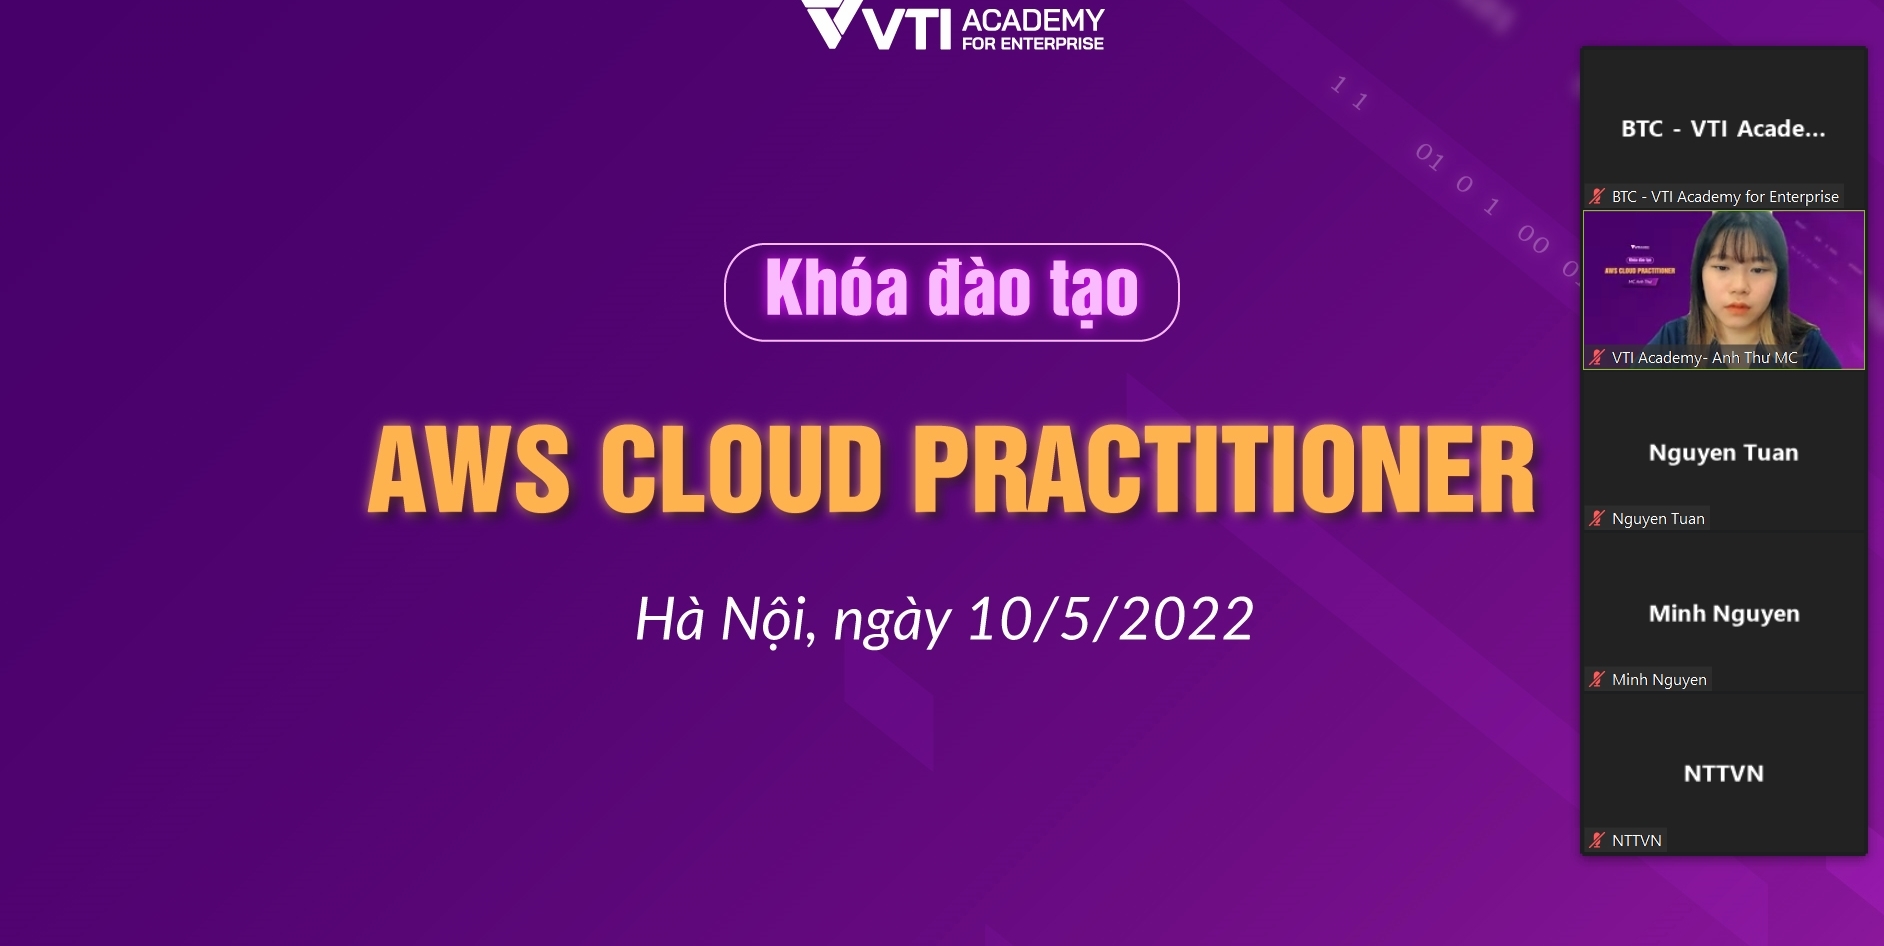 Chúc mừng khóa đào tạo AWS Cloud Practitioner diễn ra thành công tốt đẹp